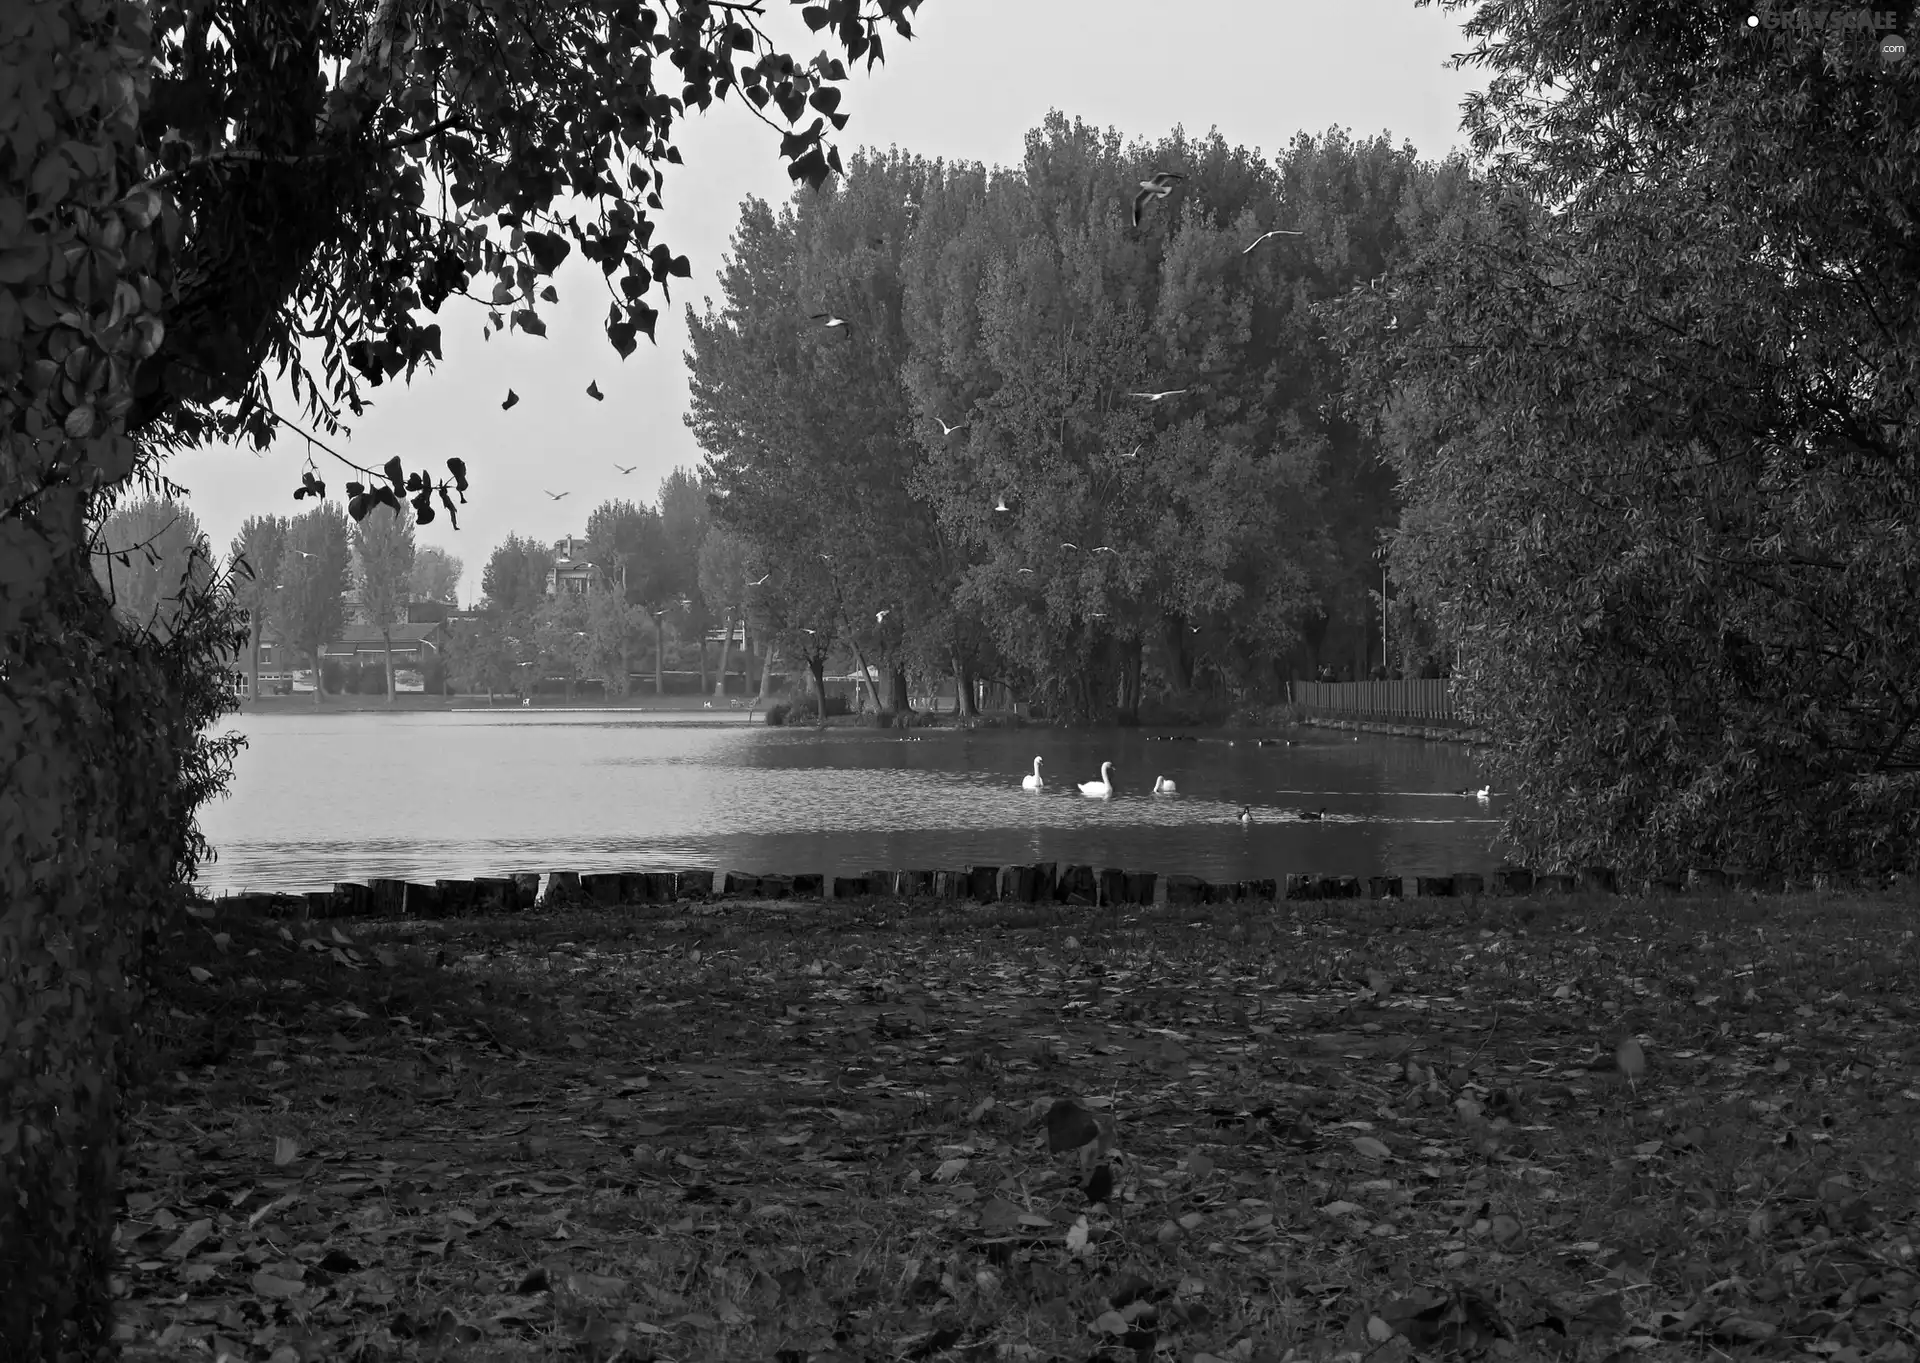 ducks, Pond - car, viewes, autumn, trees, Swan